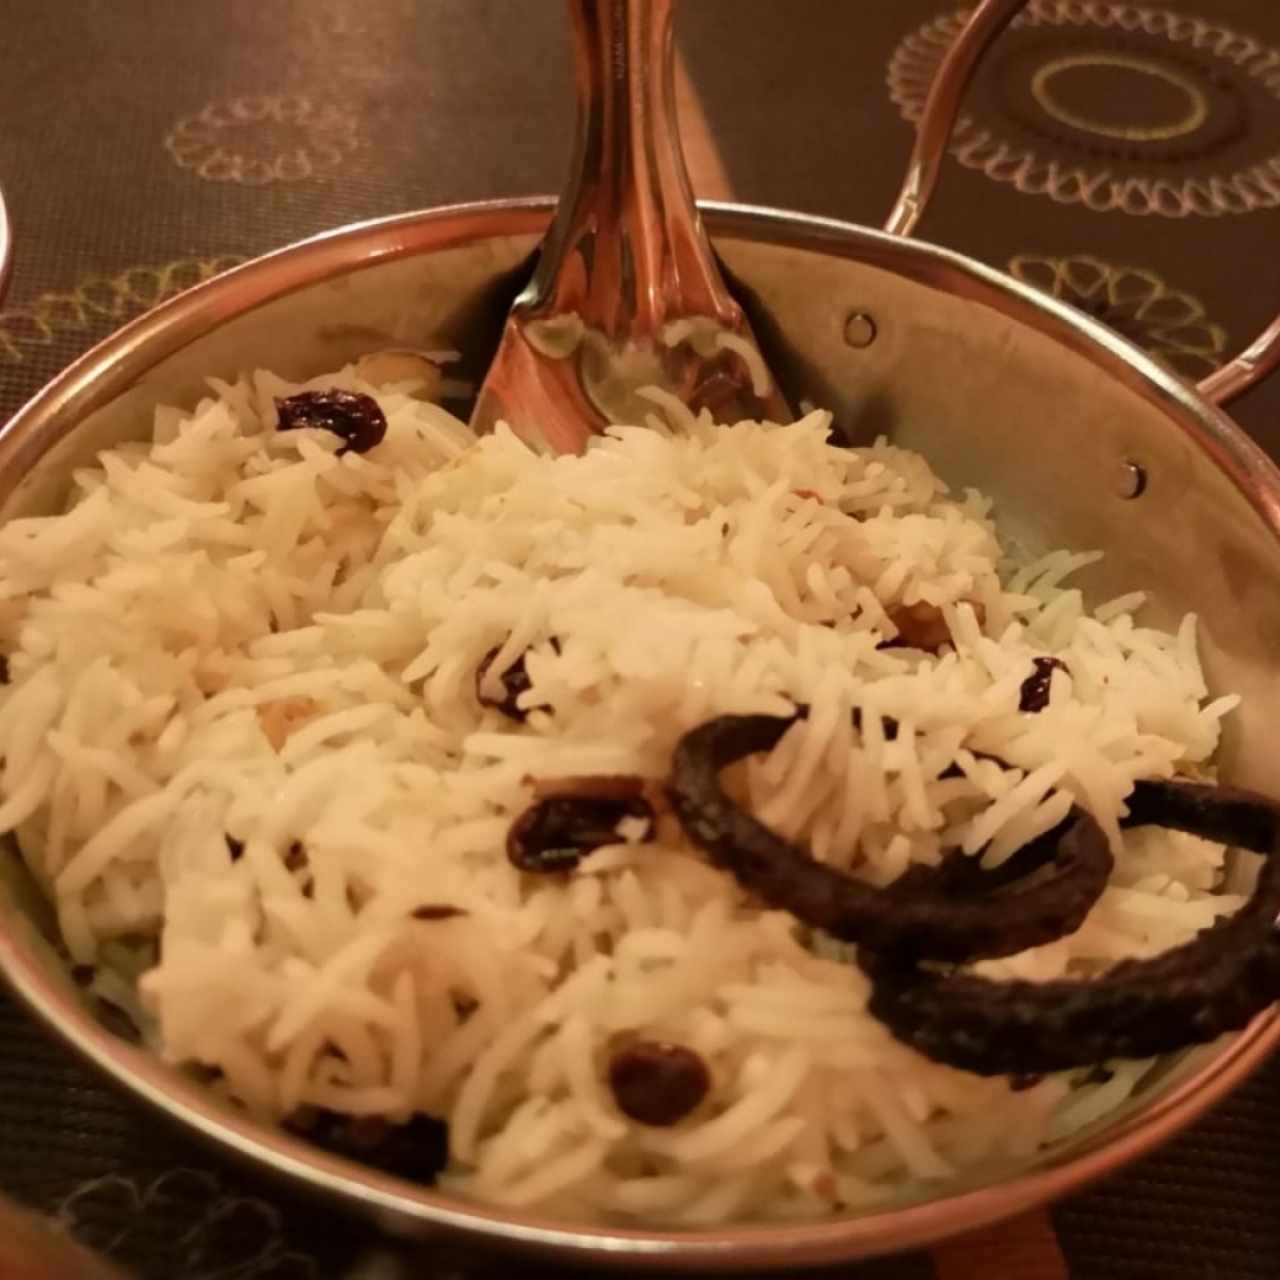 arroz basmati con almendras y frutos secos